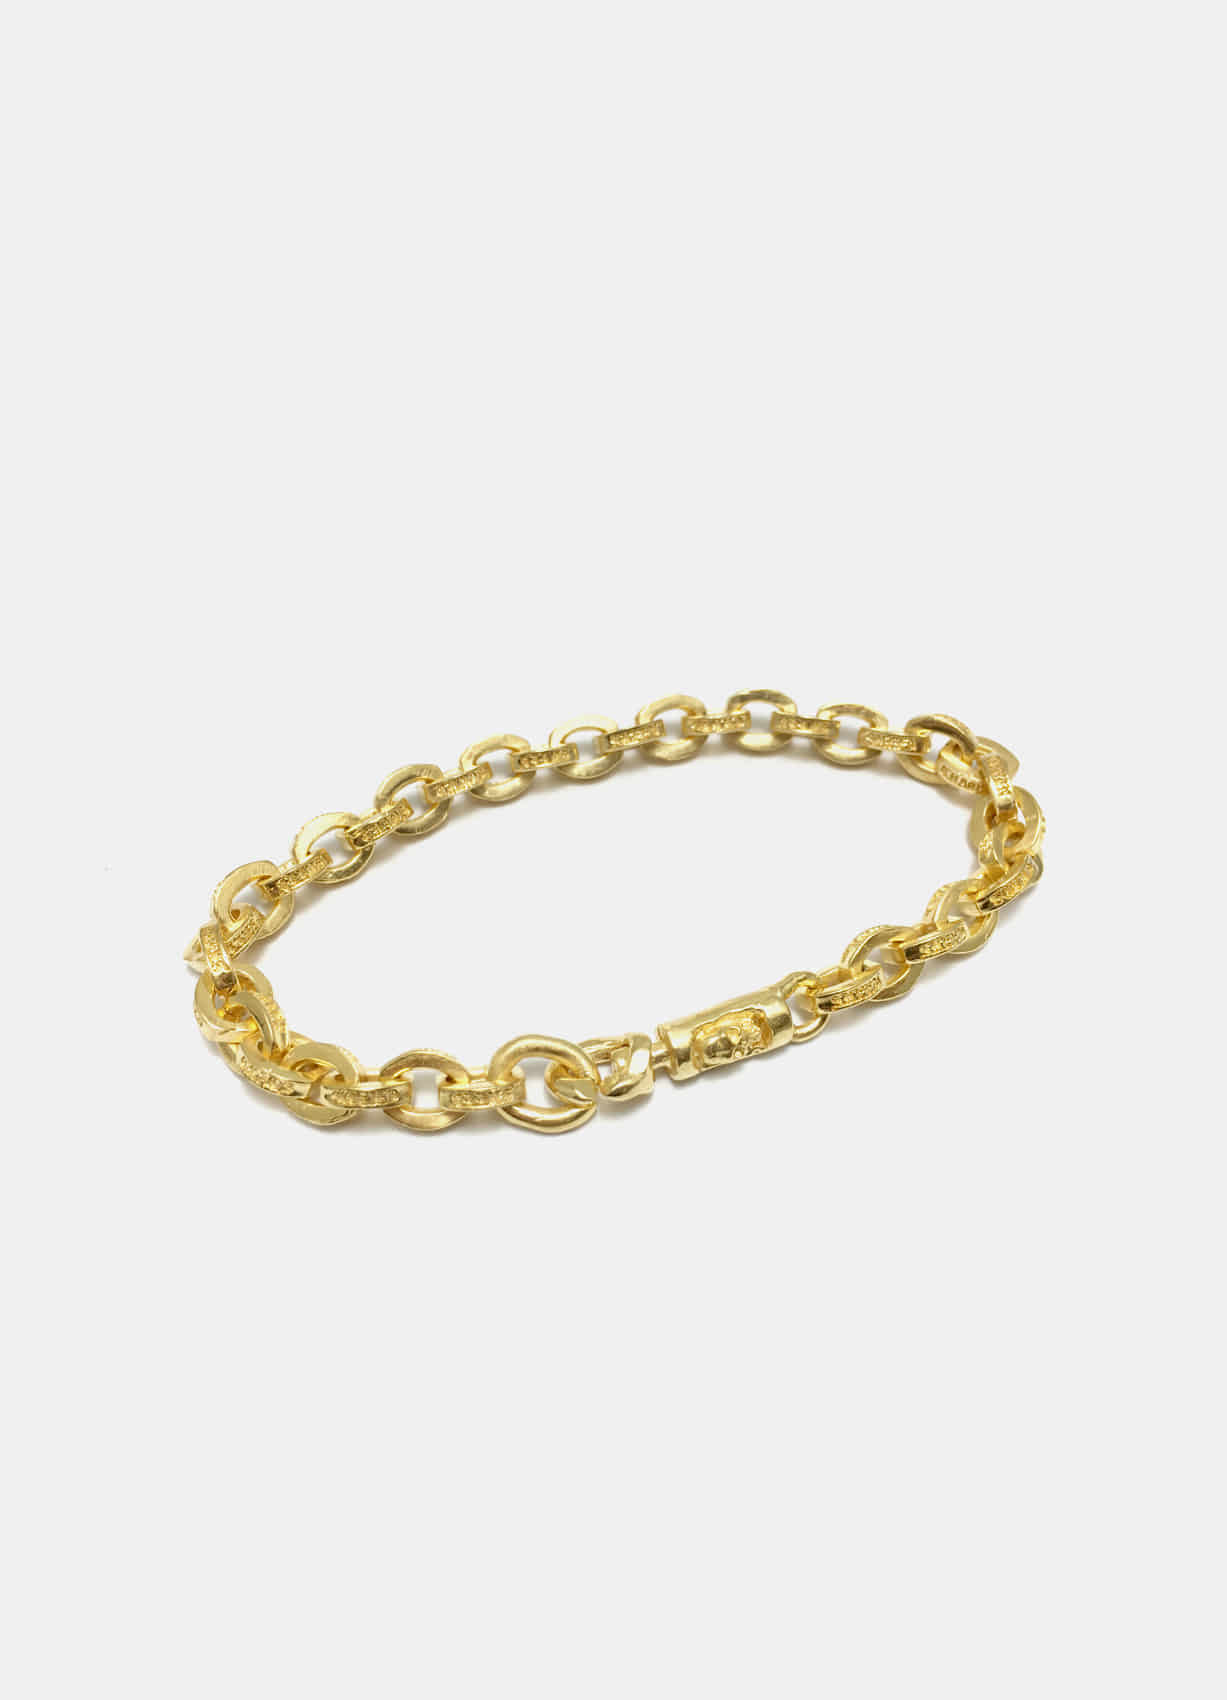 579 Chain Gold Bracelet New Ver